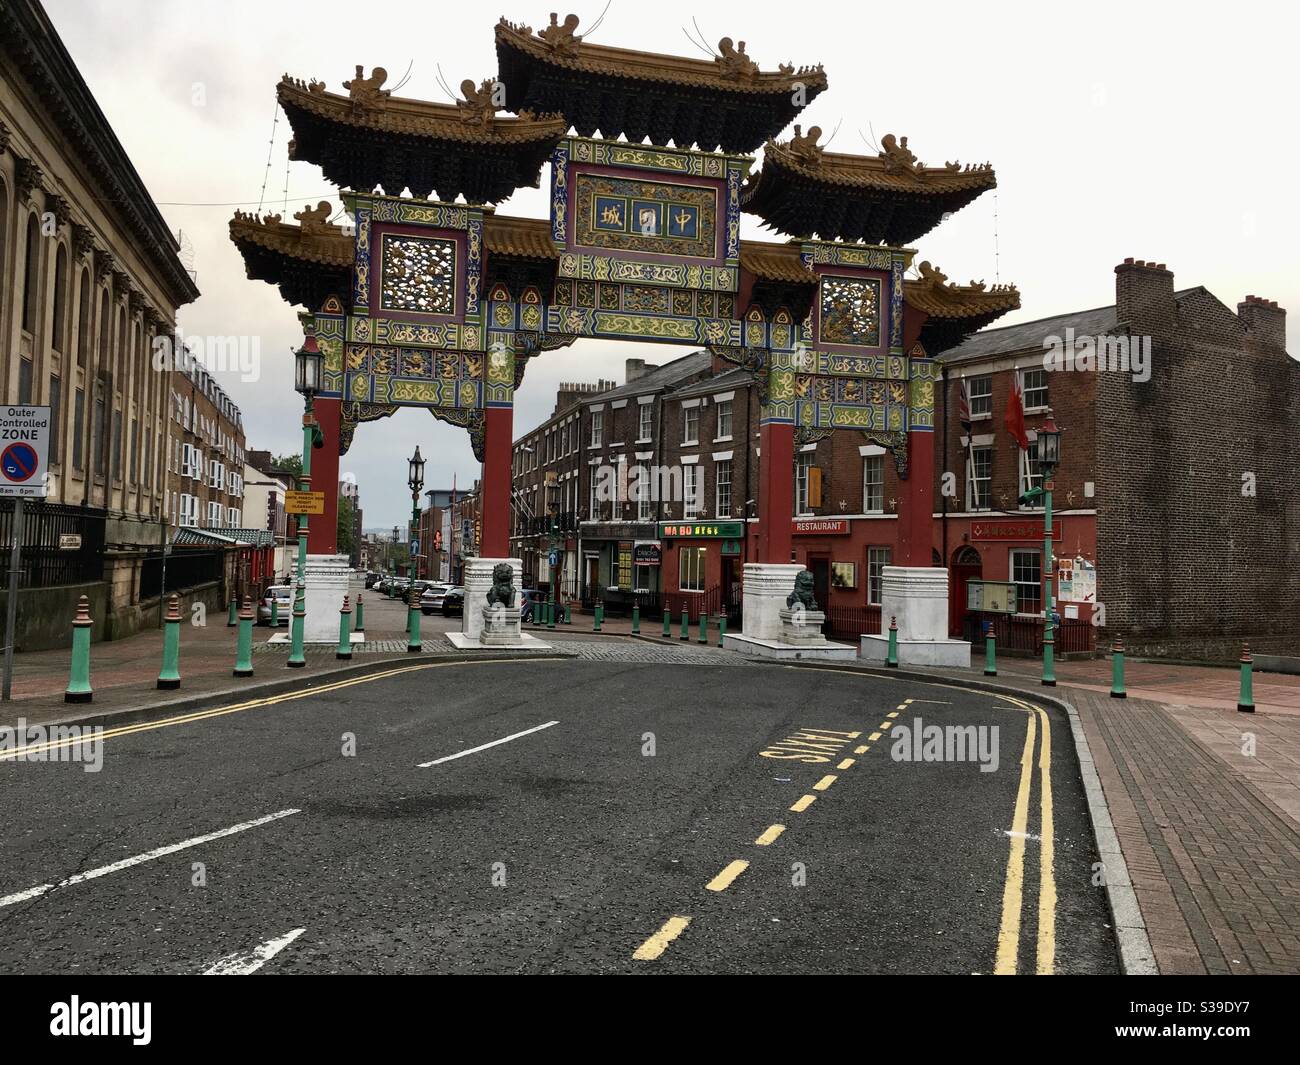 Ingresso alla China Town di Liverpool UK, realizzato in stile architettonico cinese Foto Stock